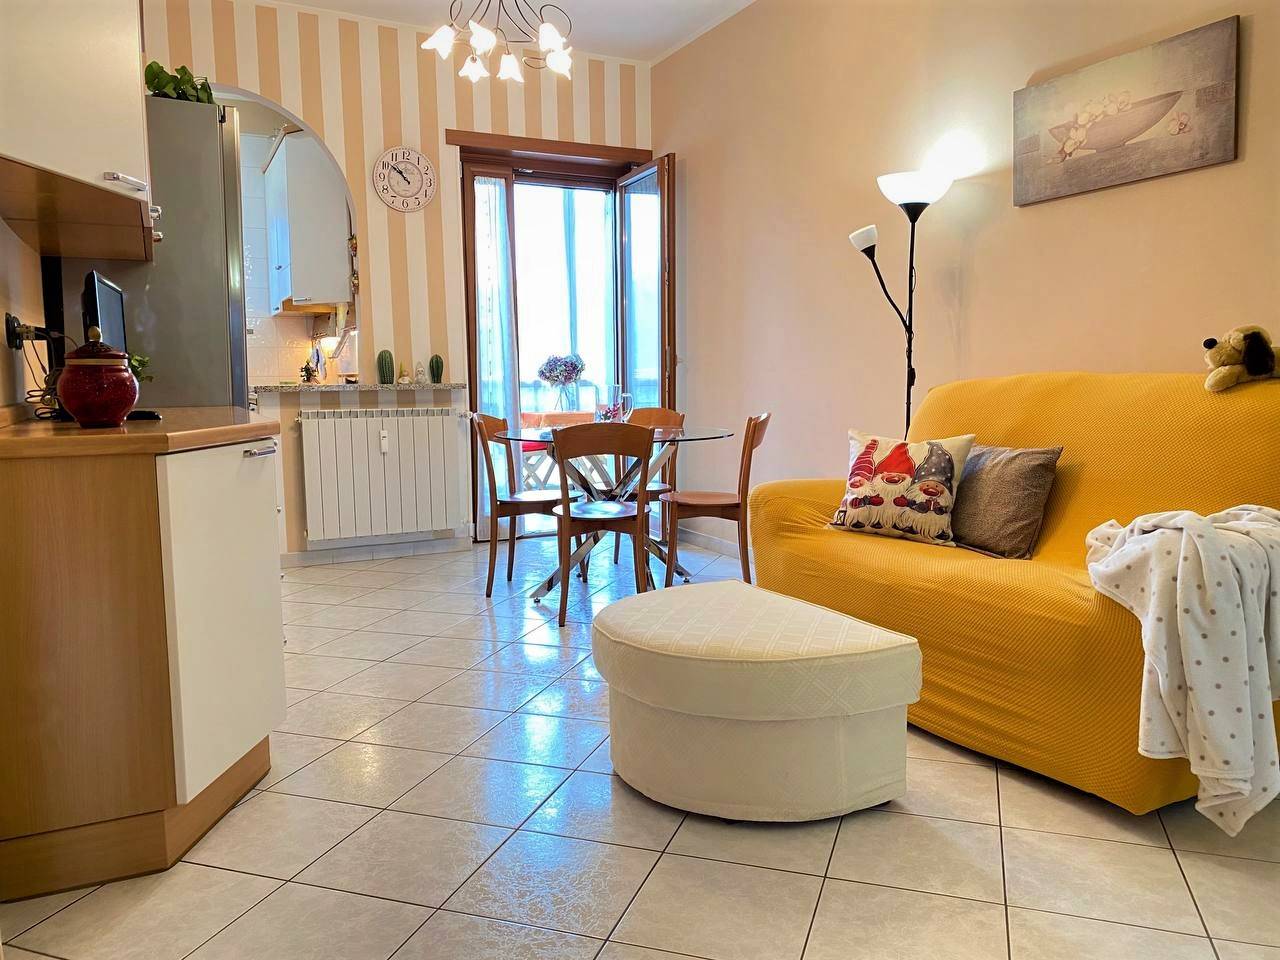 Appartamento in vendita a Banchette, 2 locali, prezzo € 57.000 | PortaleAgenzieImmobiliari.it